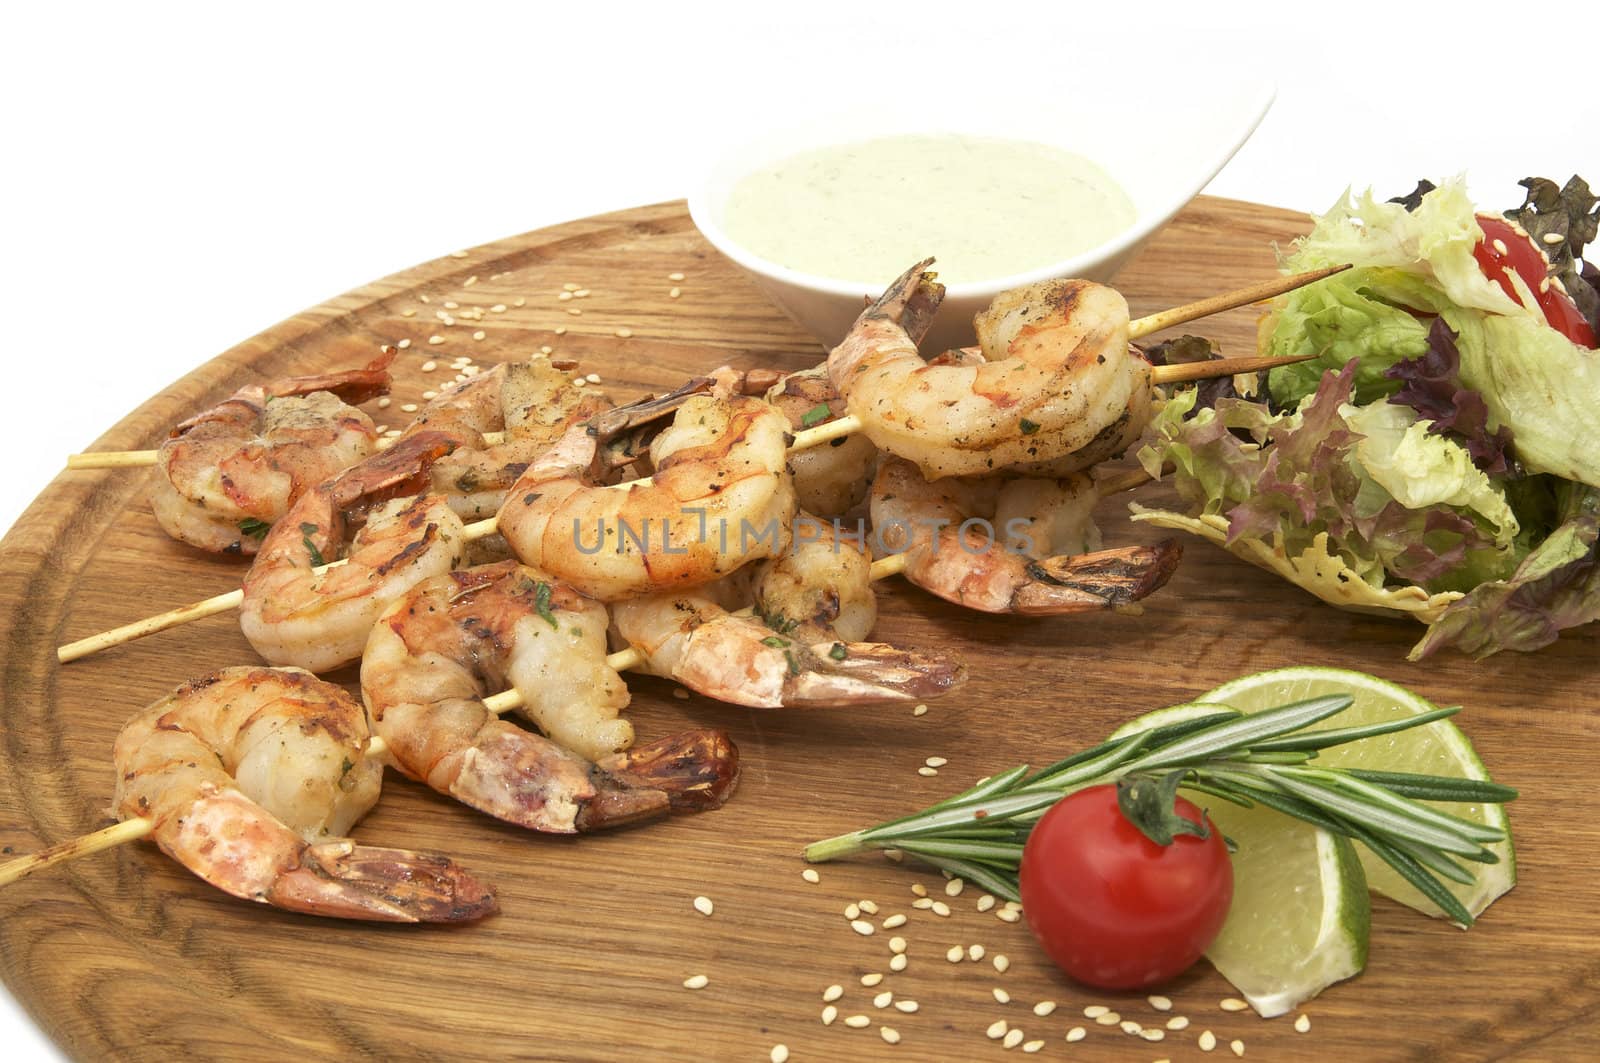 grilled shrimp by Lester120